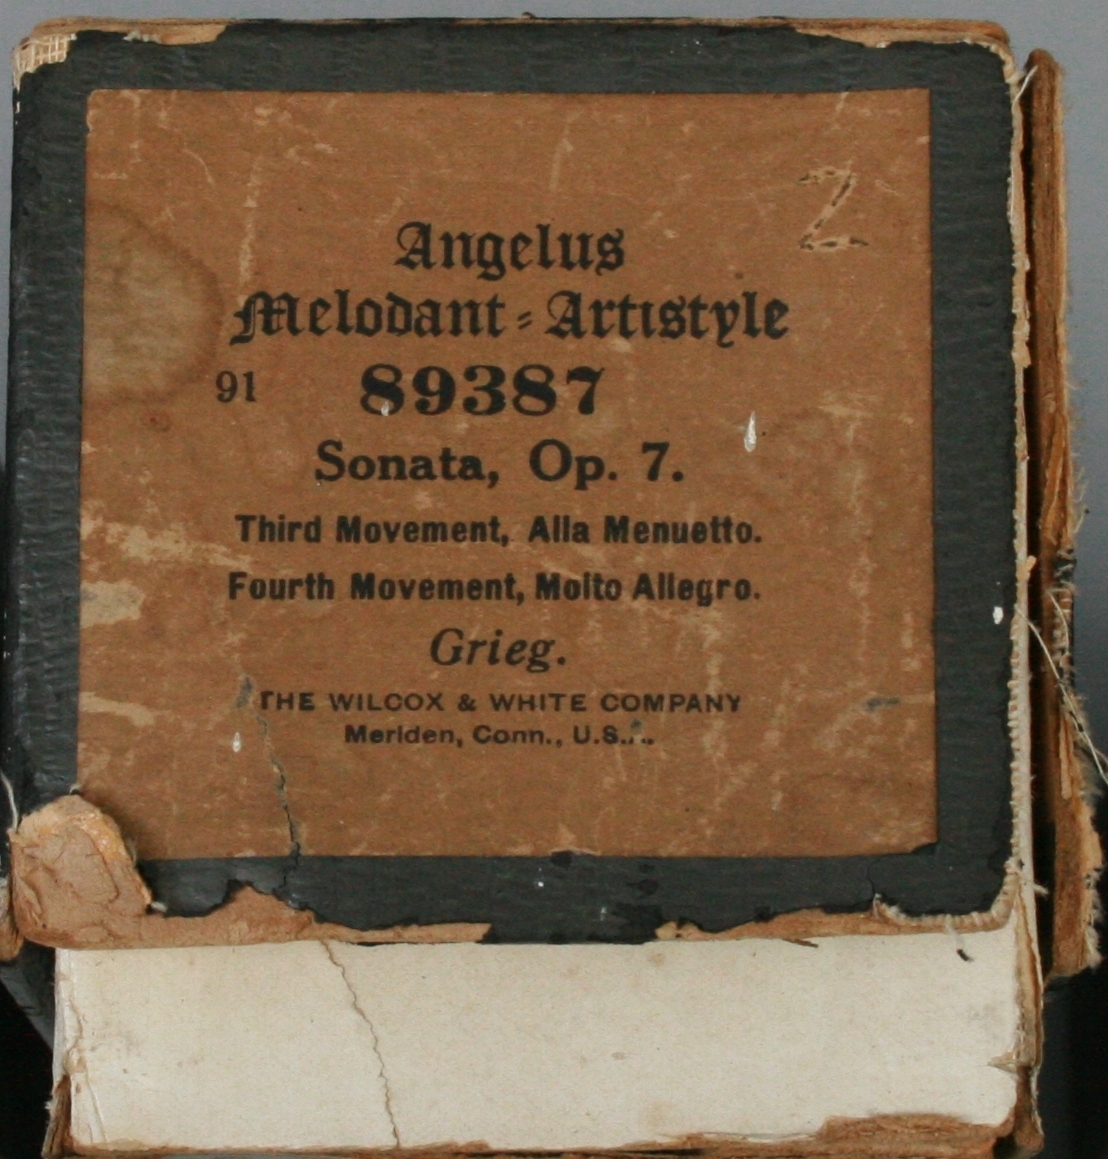 Musikkrull med eske for Angelus Melodant, Artistyle system (flere patenter i ulike land godkjente mellom 12/5 1891 (US) og 10/9 1907 (US)).